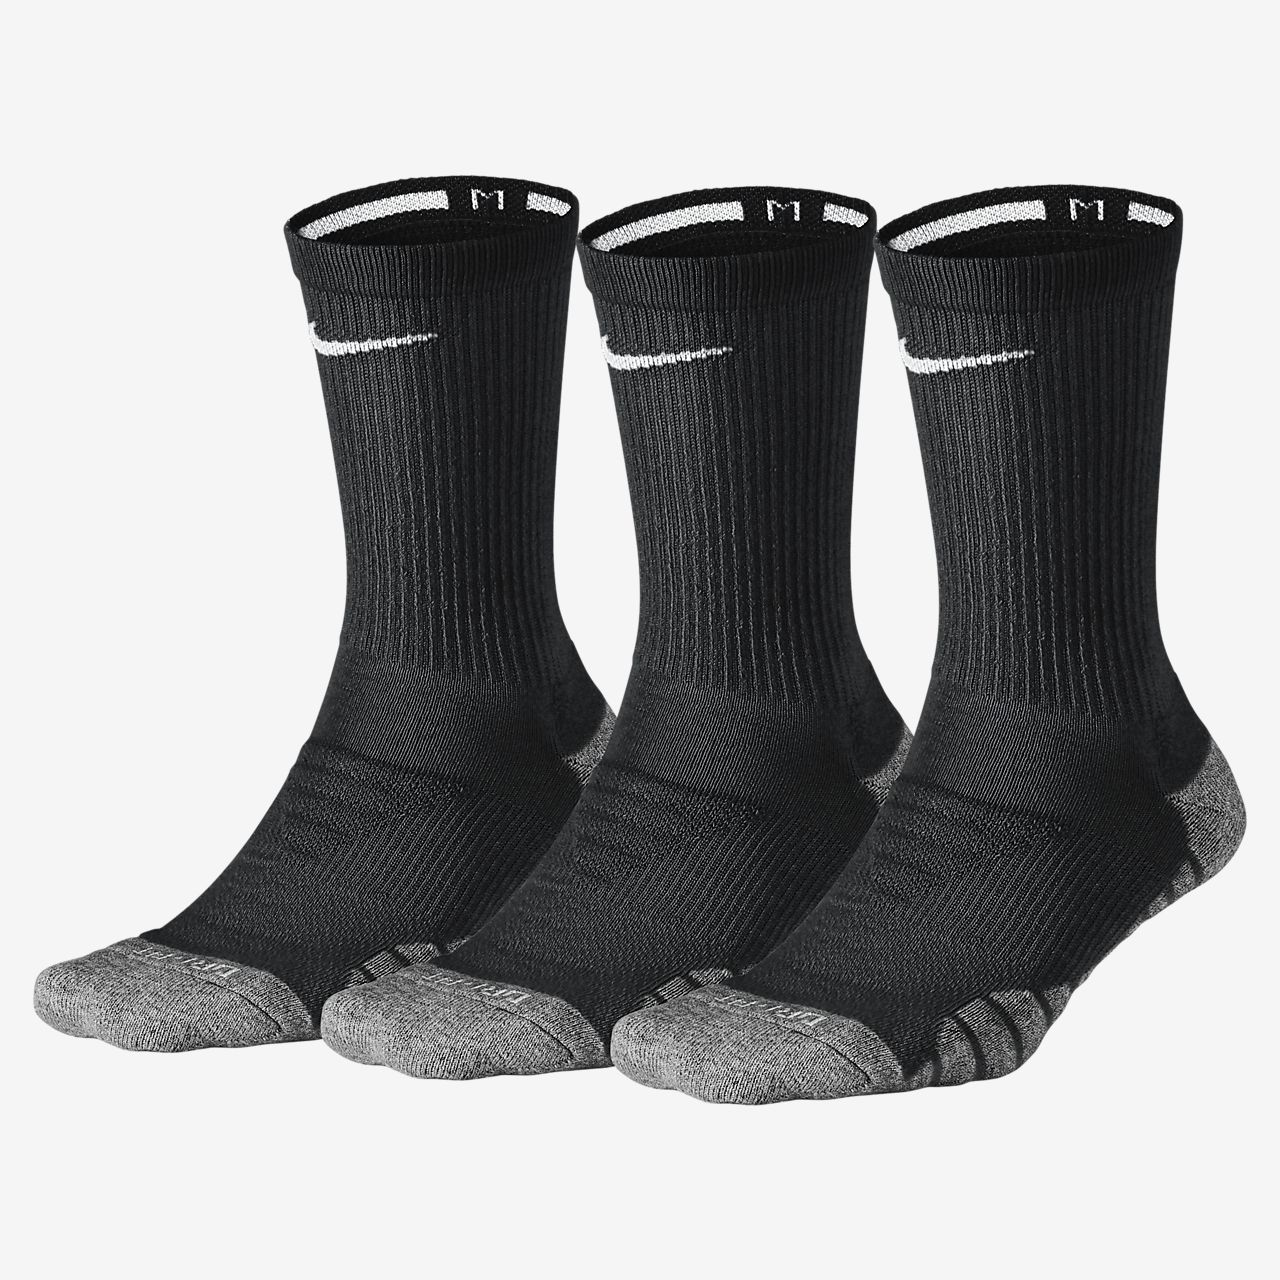 Nike Dry Cushion Crew Training Socks (3 Pair).